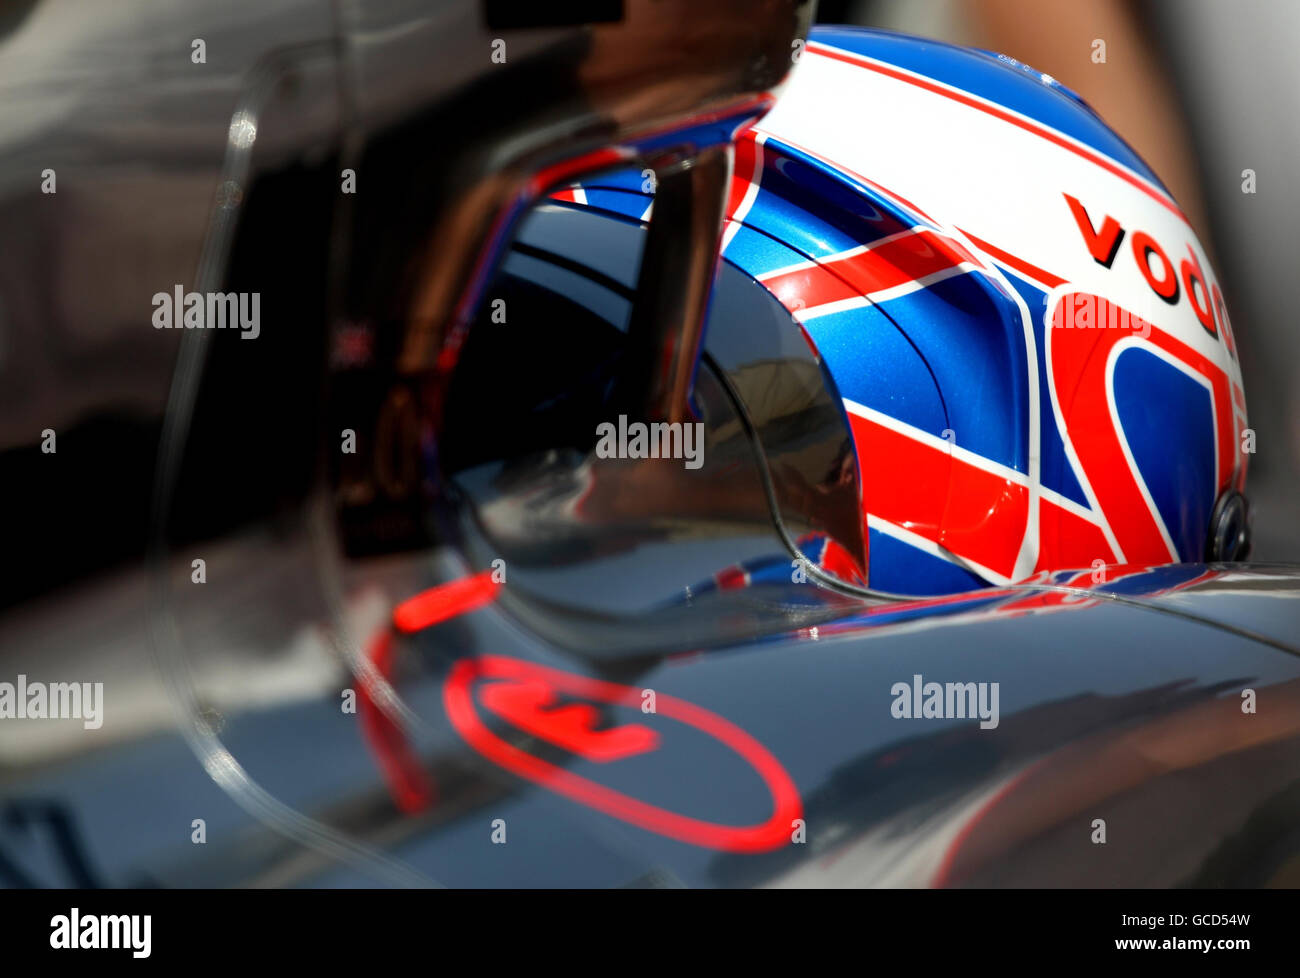 Courses automobiles - Championnat du monde de Formule 1 - Grand Prix de Bahreïn - qualification - circuit international de Bahreïn.Jenson Button, pilote McLaren, lors de la troisième séance d'entraînement au circuit international de Bahreïn à Sakhir, Bahreïn. Banque D'Images